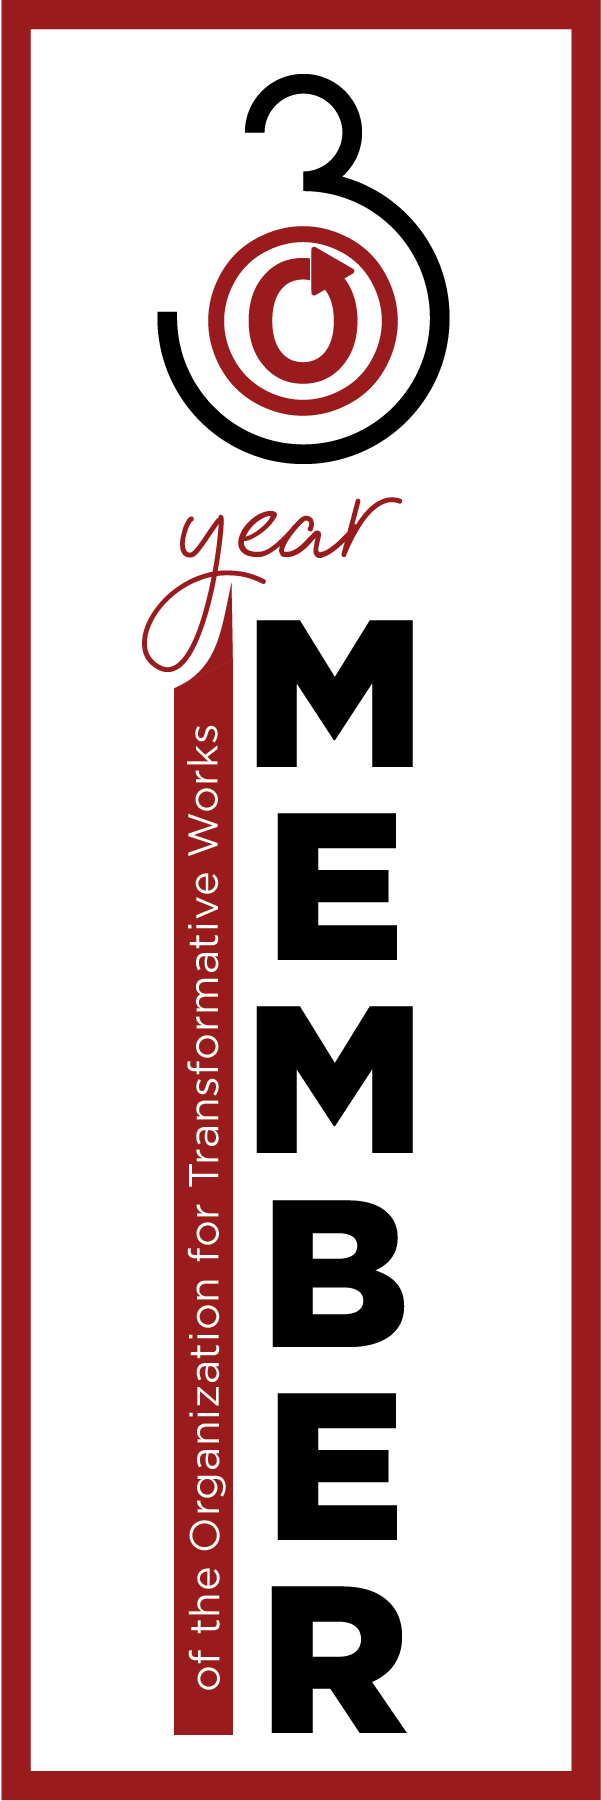 Закладка с надписью "3-year member" (Член ОTW в течение трех лет) и логотипом OTW.